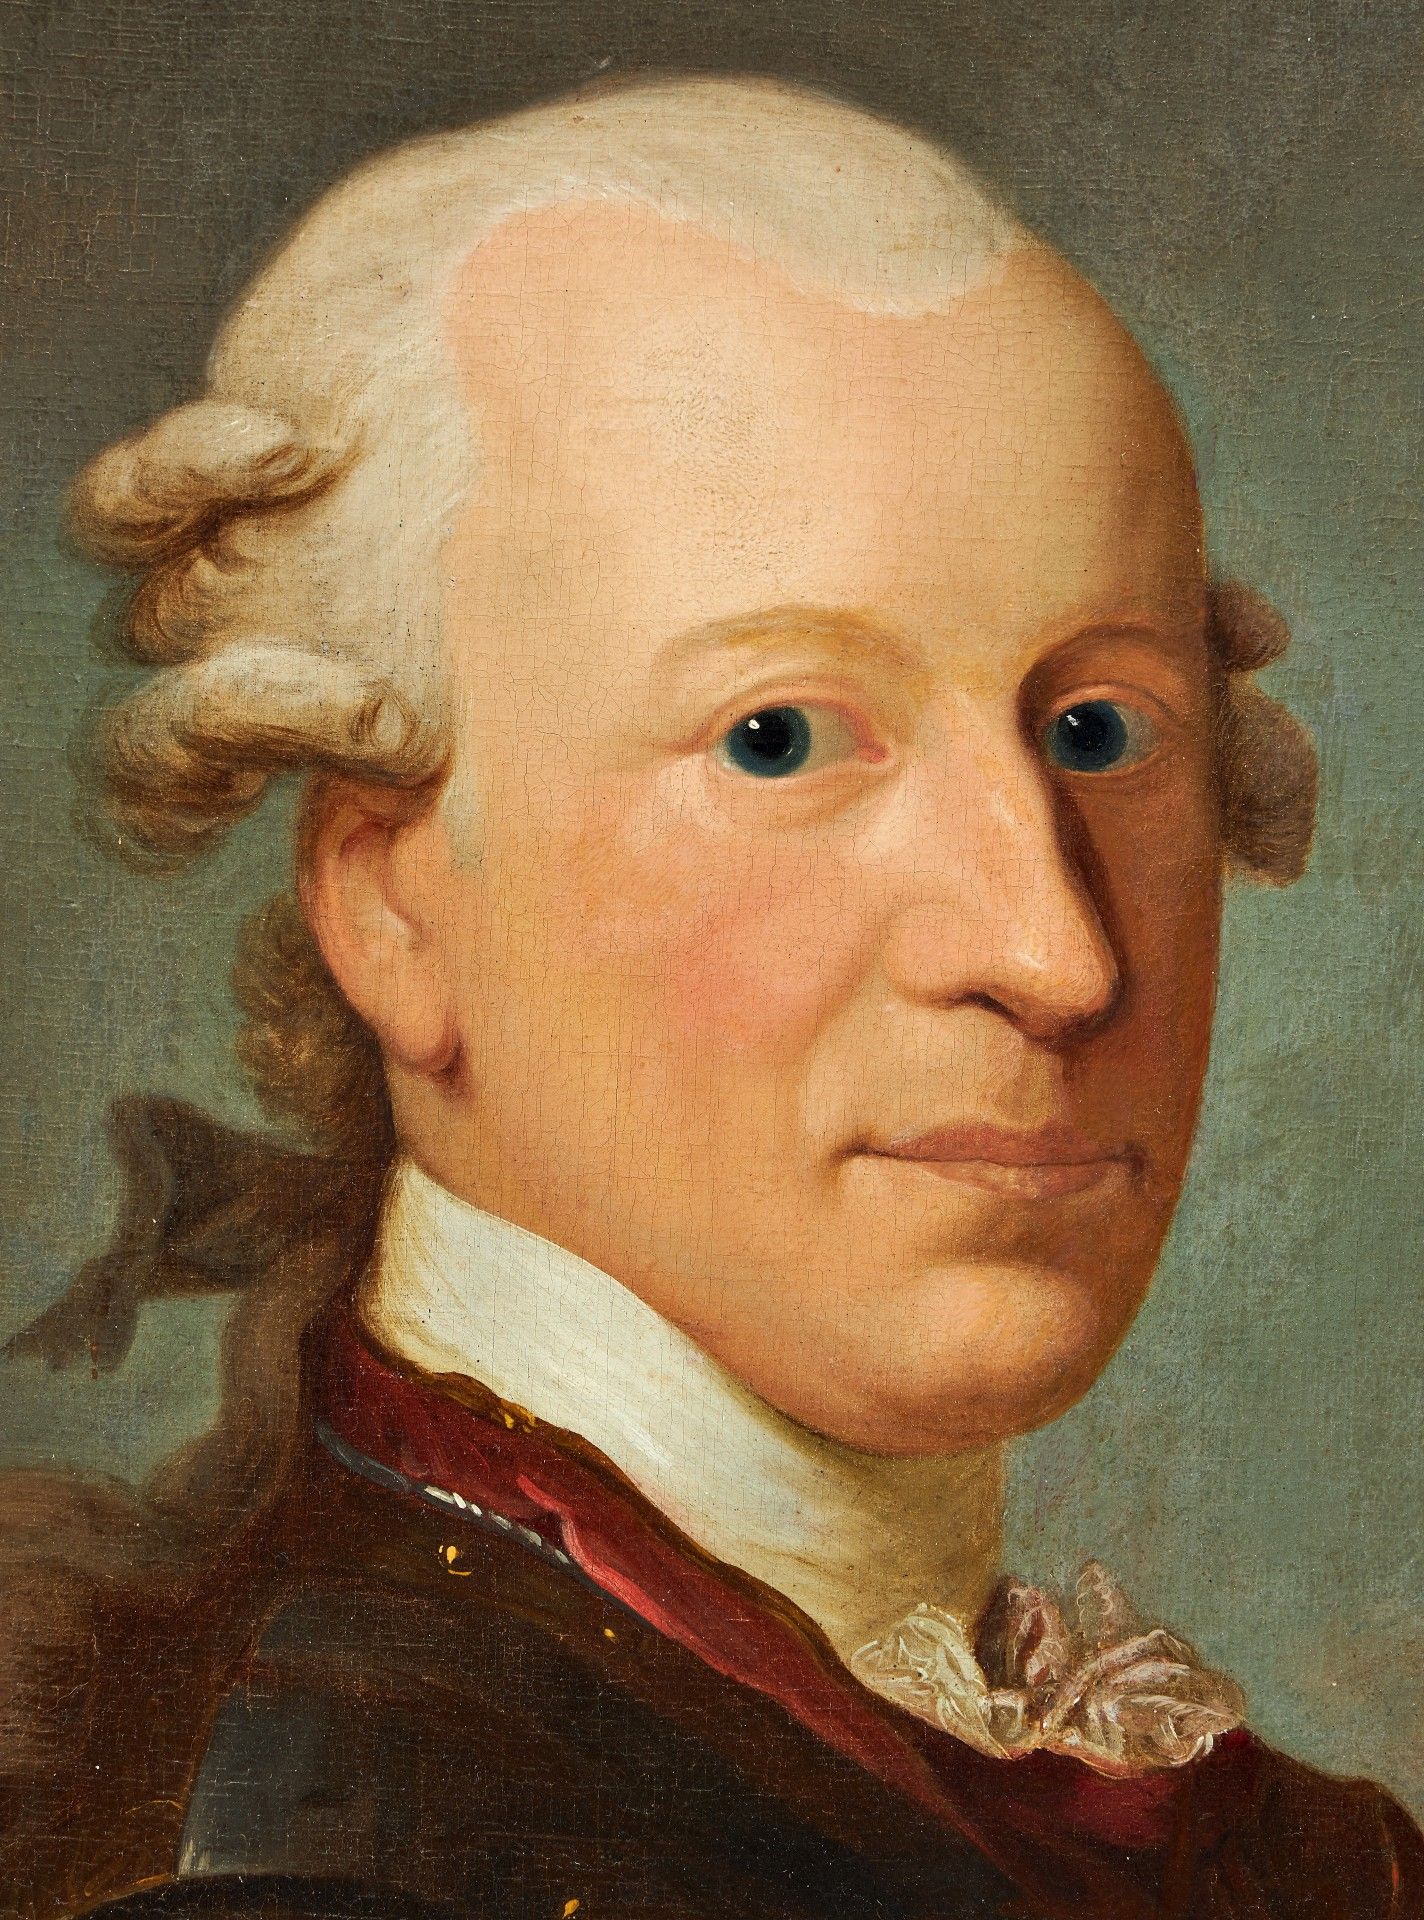 Anton Graff (Werkstatt ) "Bildnis des Karl Wilhelm Ferdinand von Braunschweig-Wolfenbüttel".